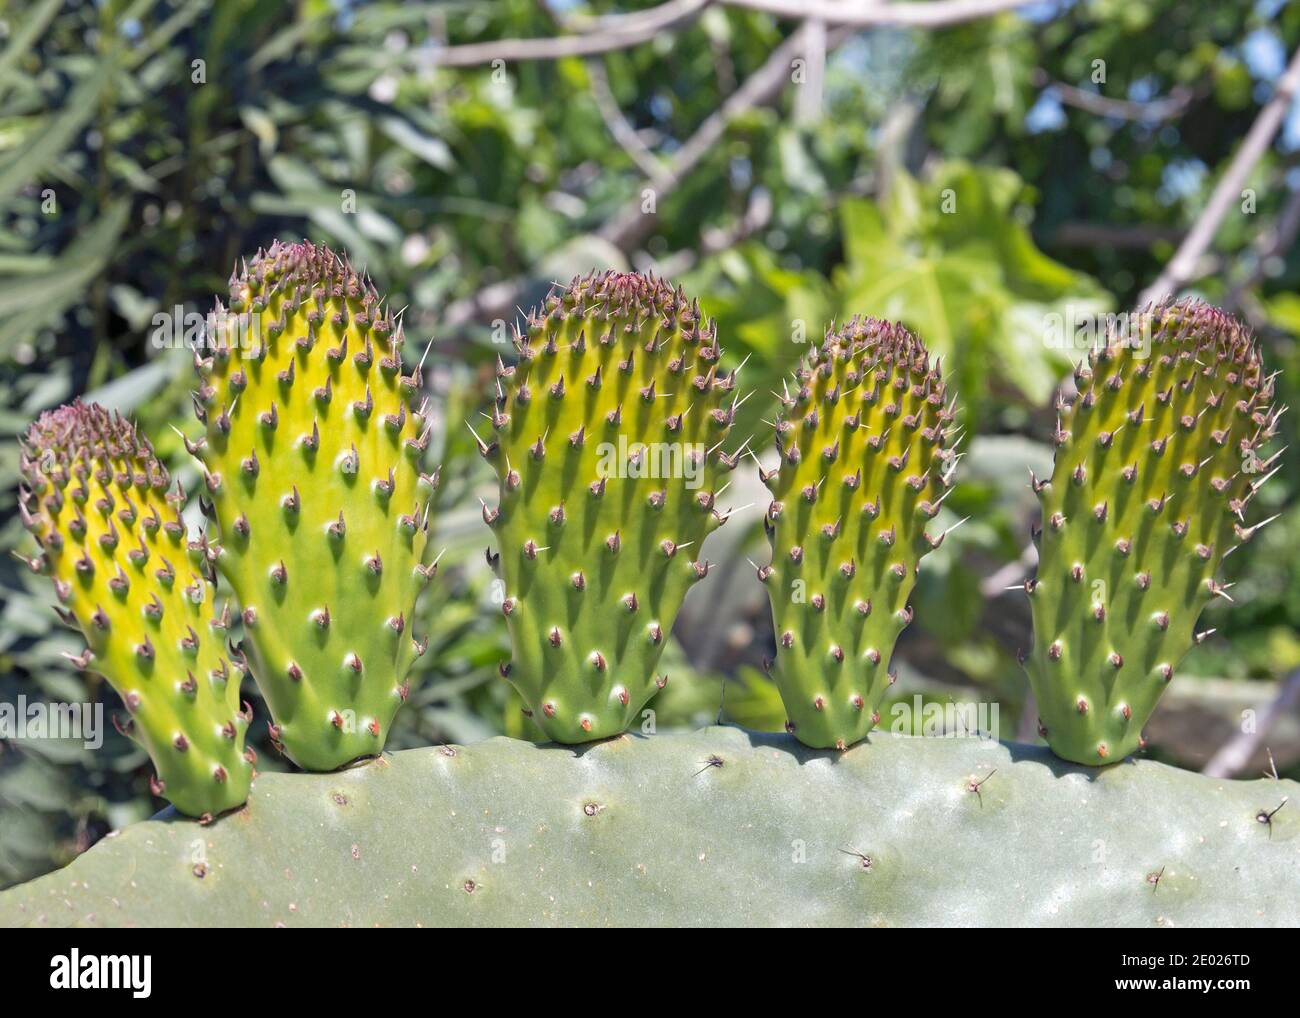 Le cactus à la poire est une plante comestible qui pousse en Amérique du Sud, au Mexique, aux États-Unis, en Australie et en Méditerranée. Banque D'Images